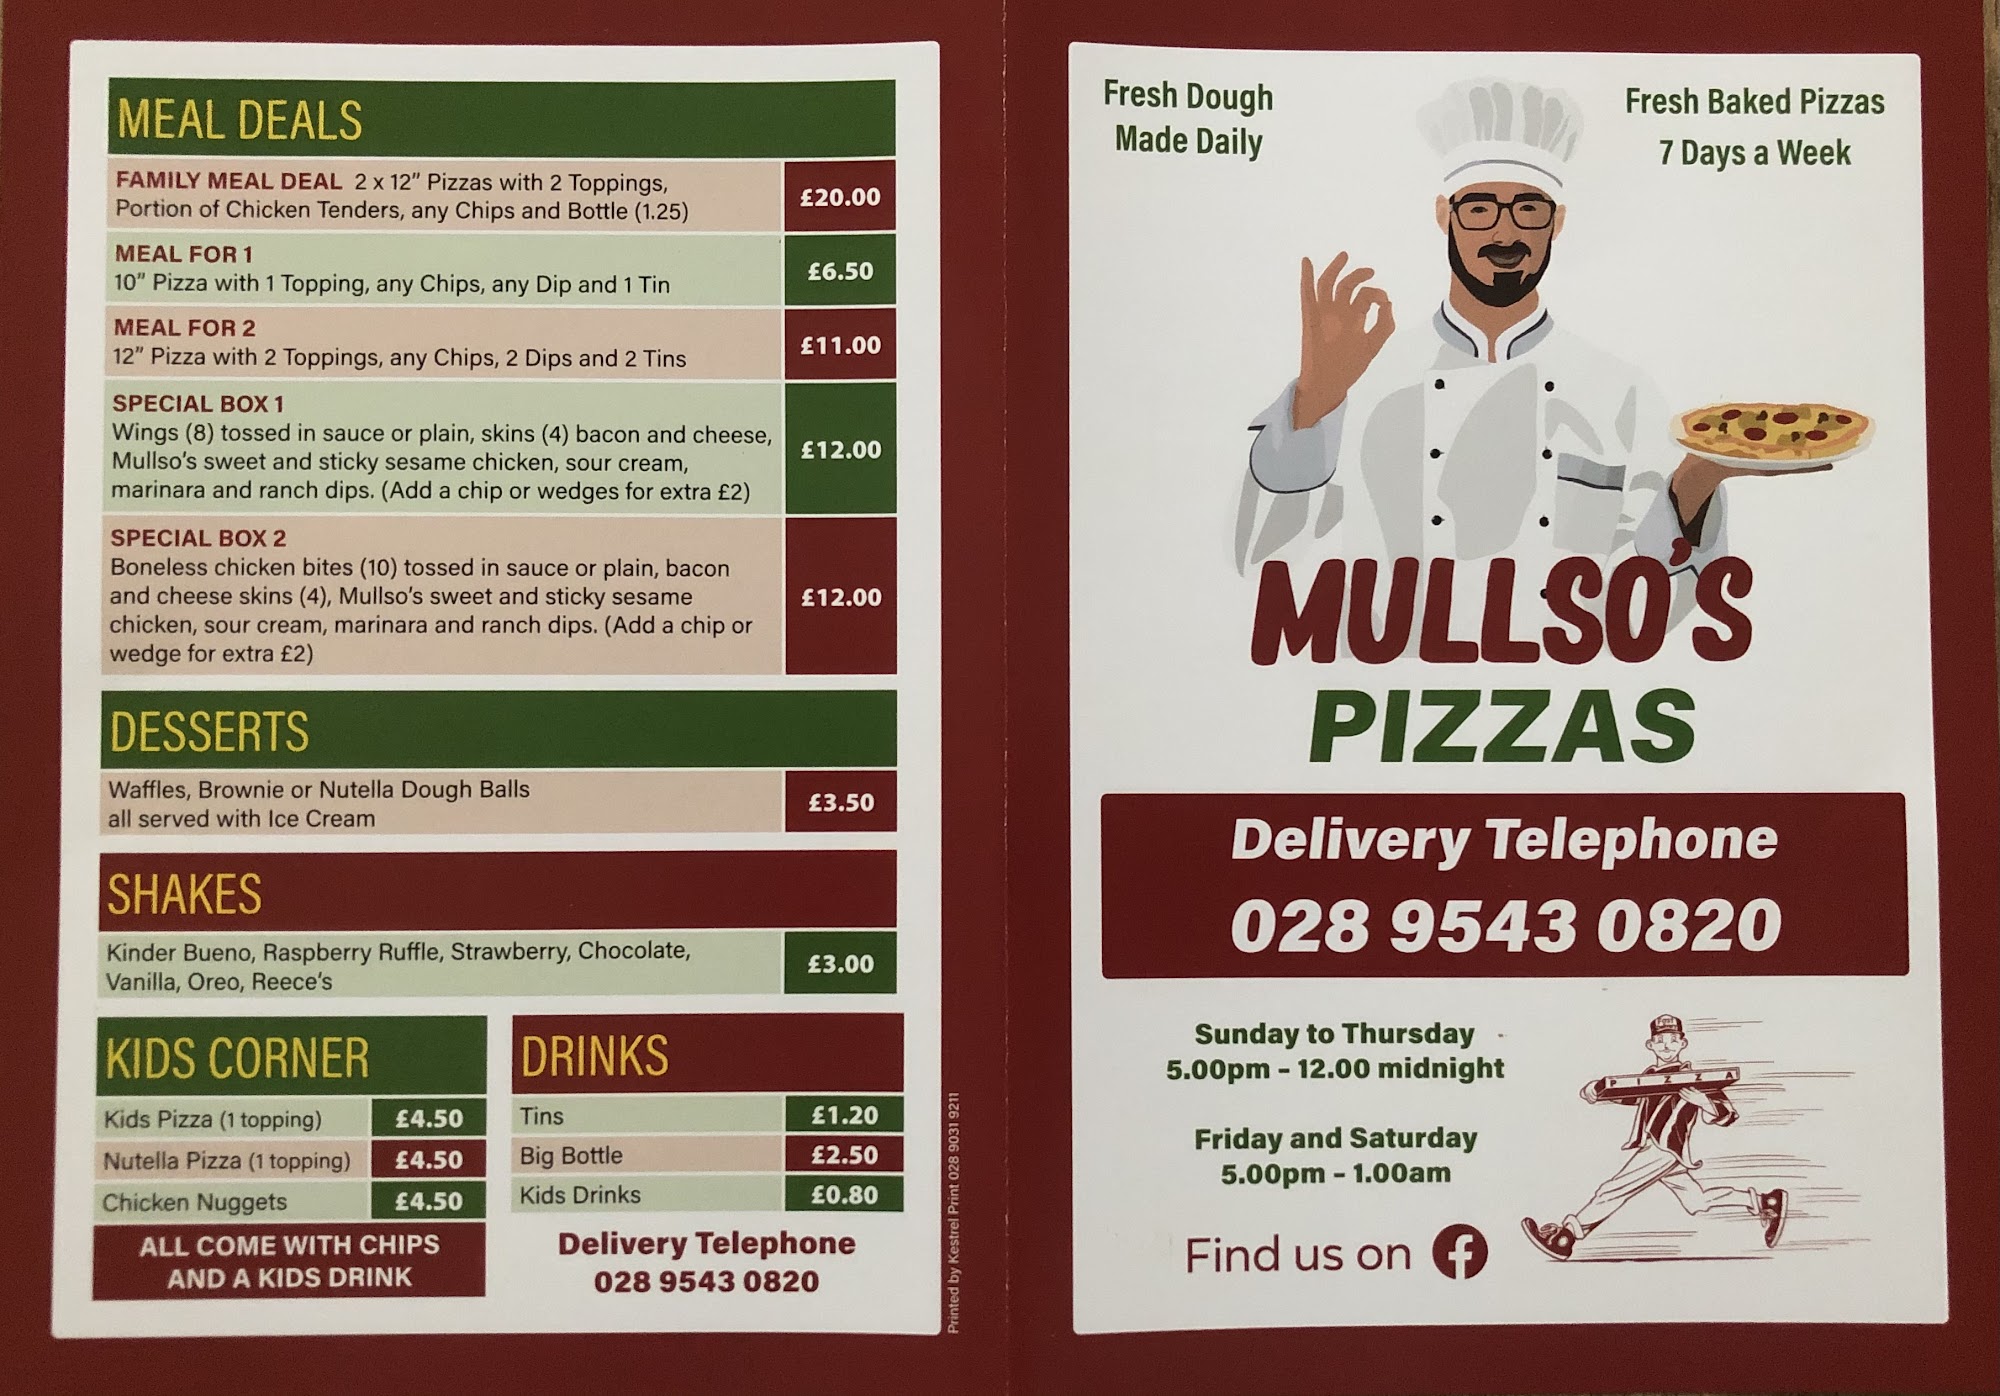 Mullso's Pizza